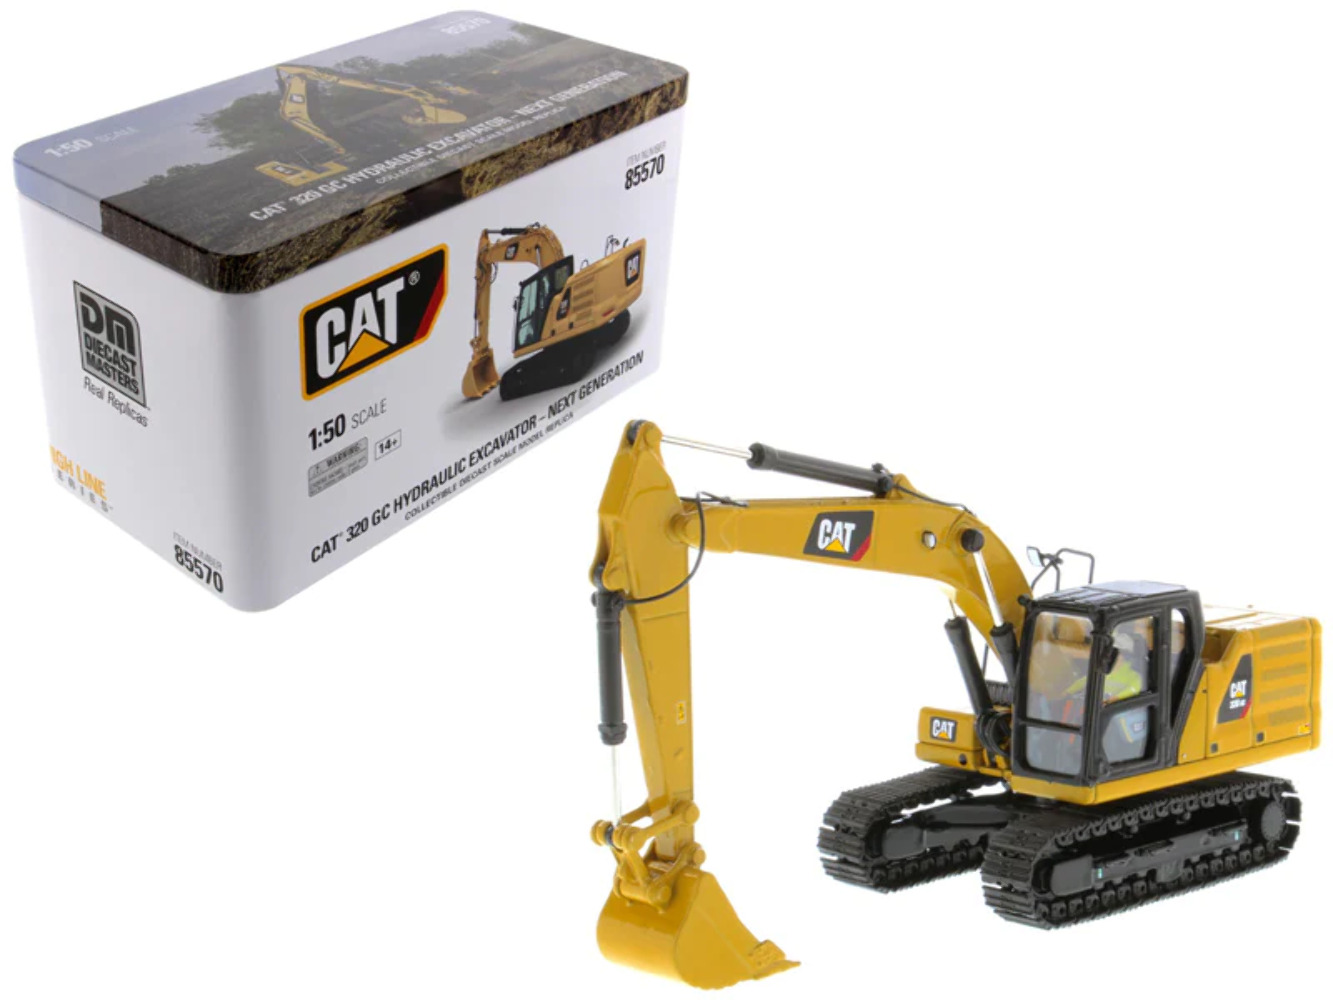 CAT 320 GC Excavator Next Generation 1/50 Diecast Model